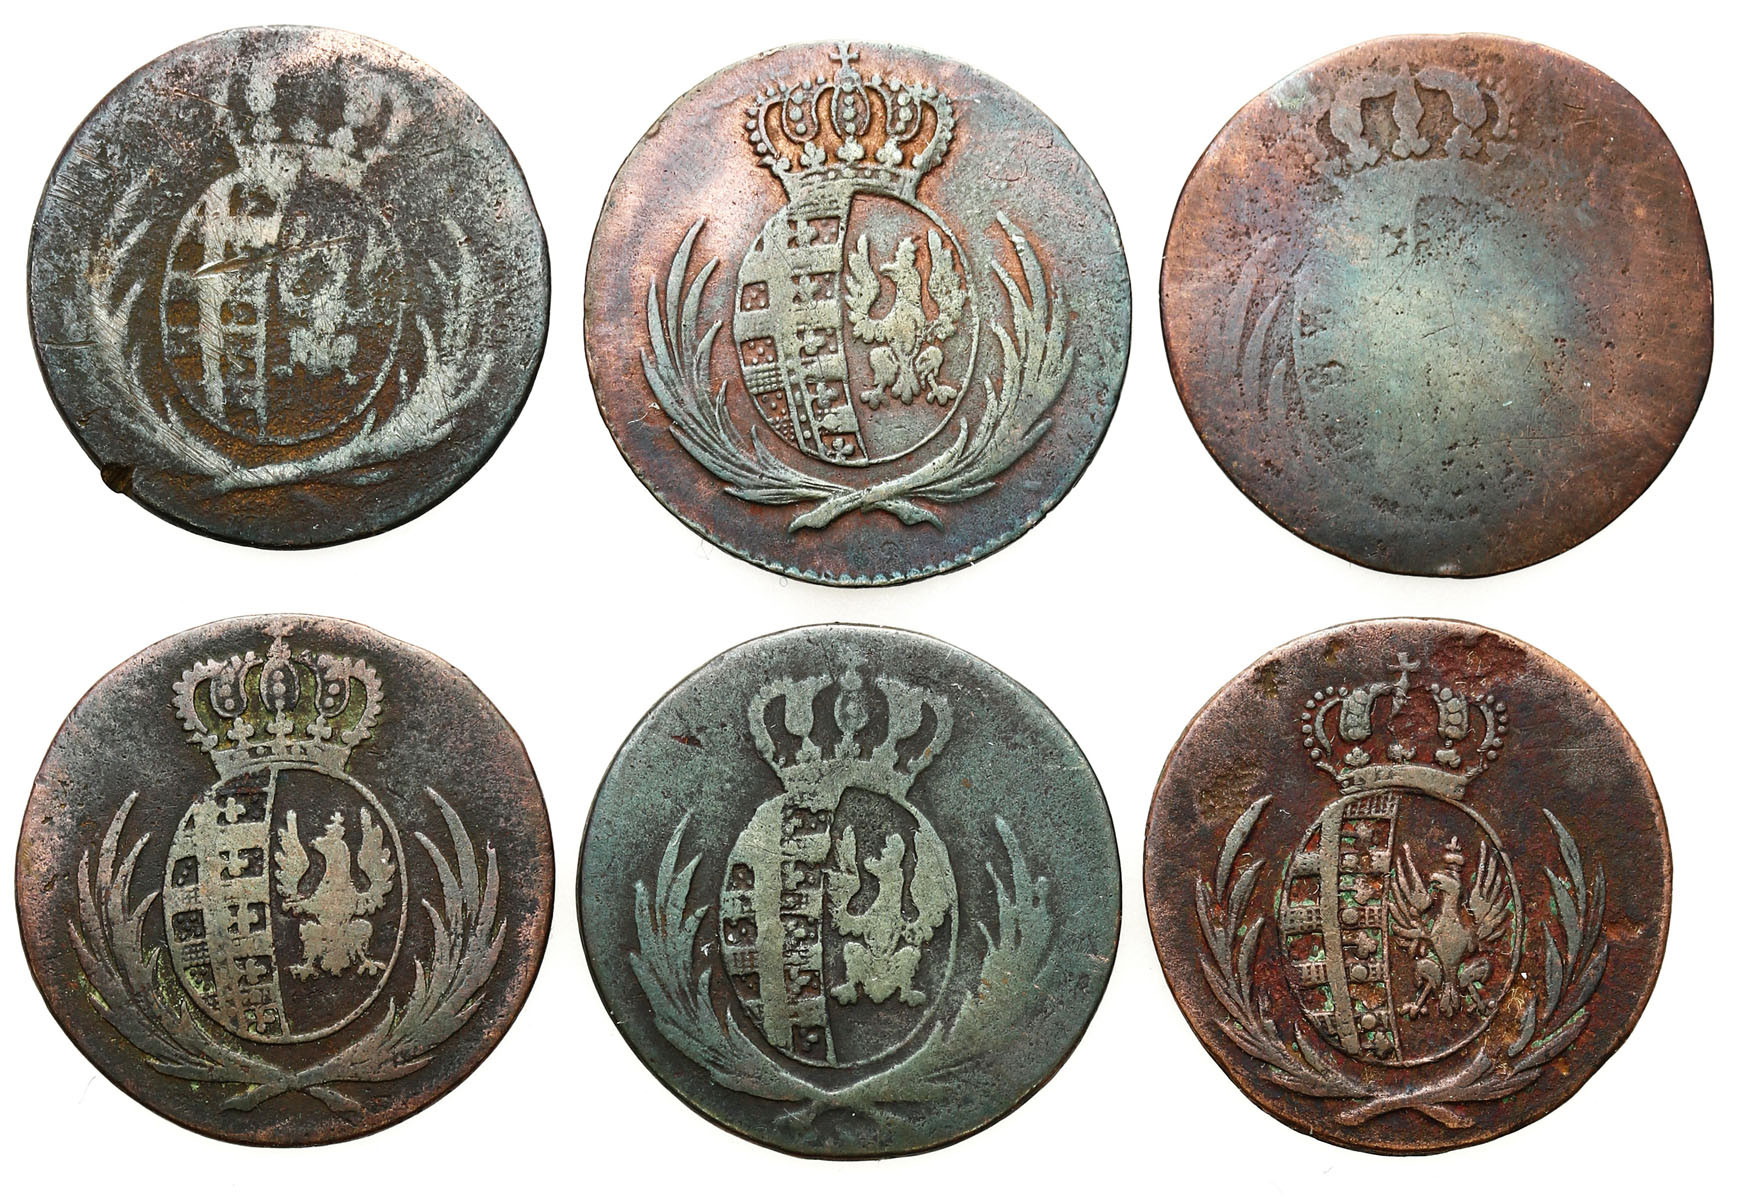 Księstwo Warszawskie. Grosz 1810-1814, Warszawa, zestaw 6 monet